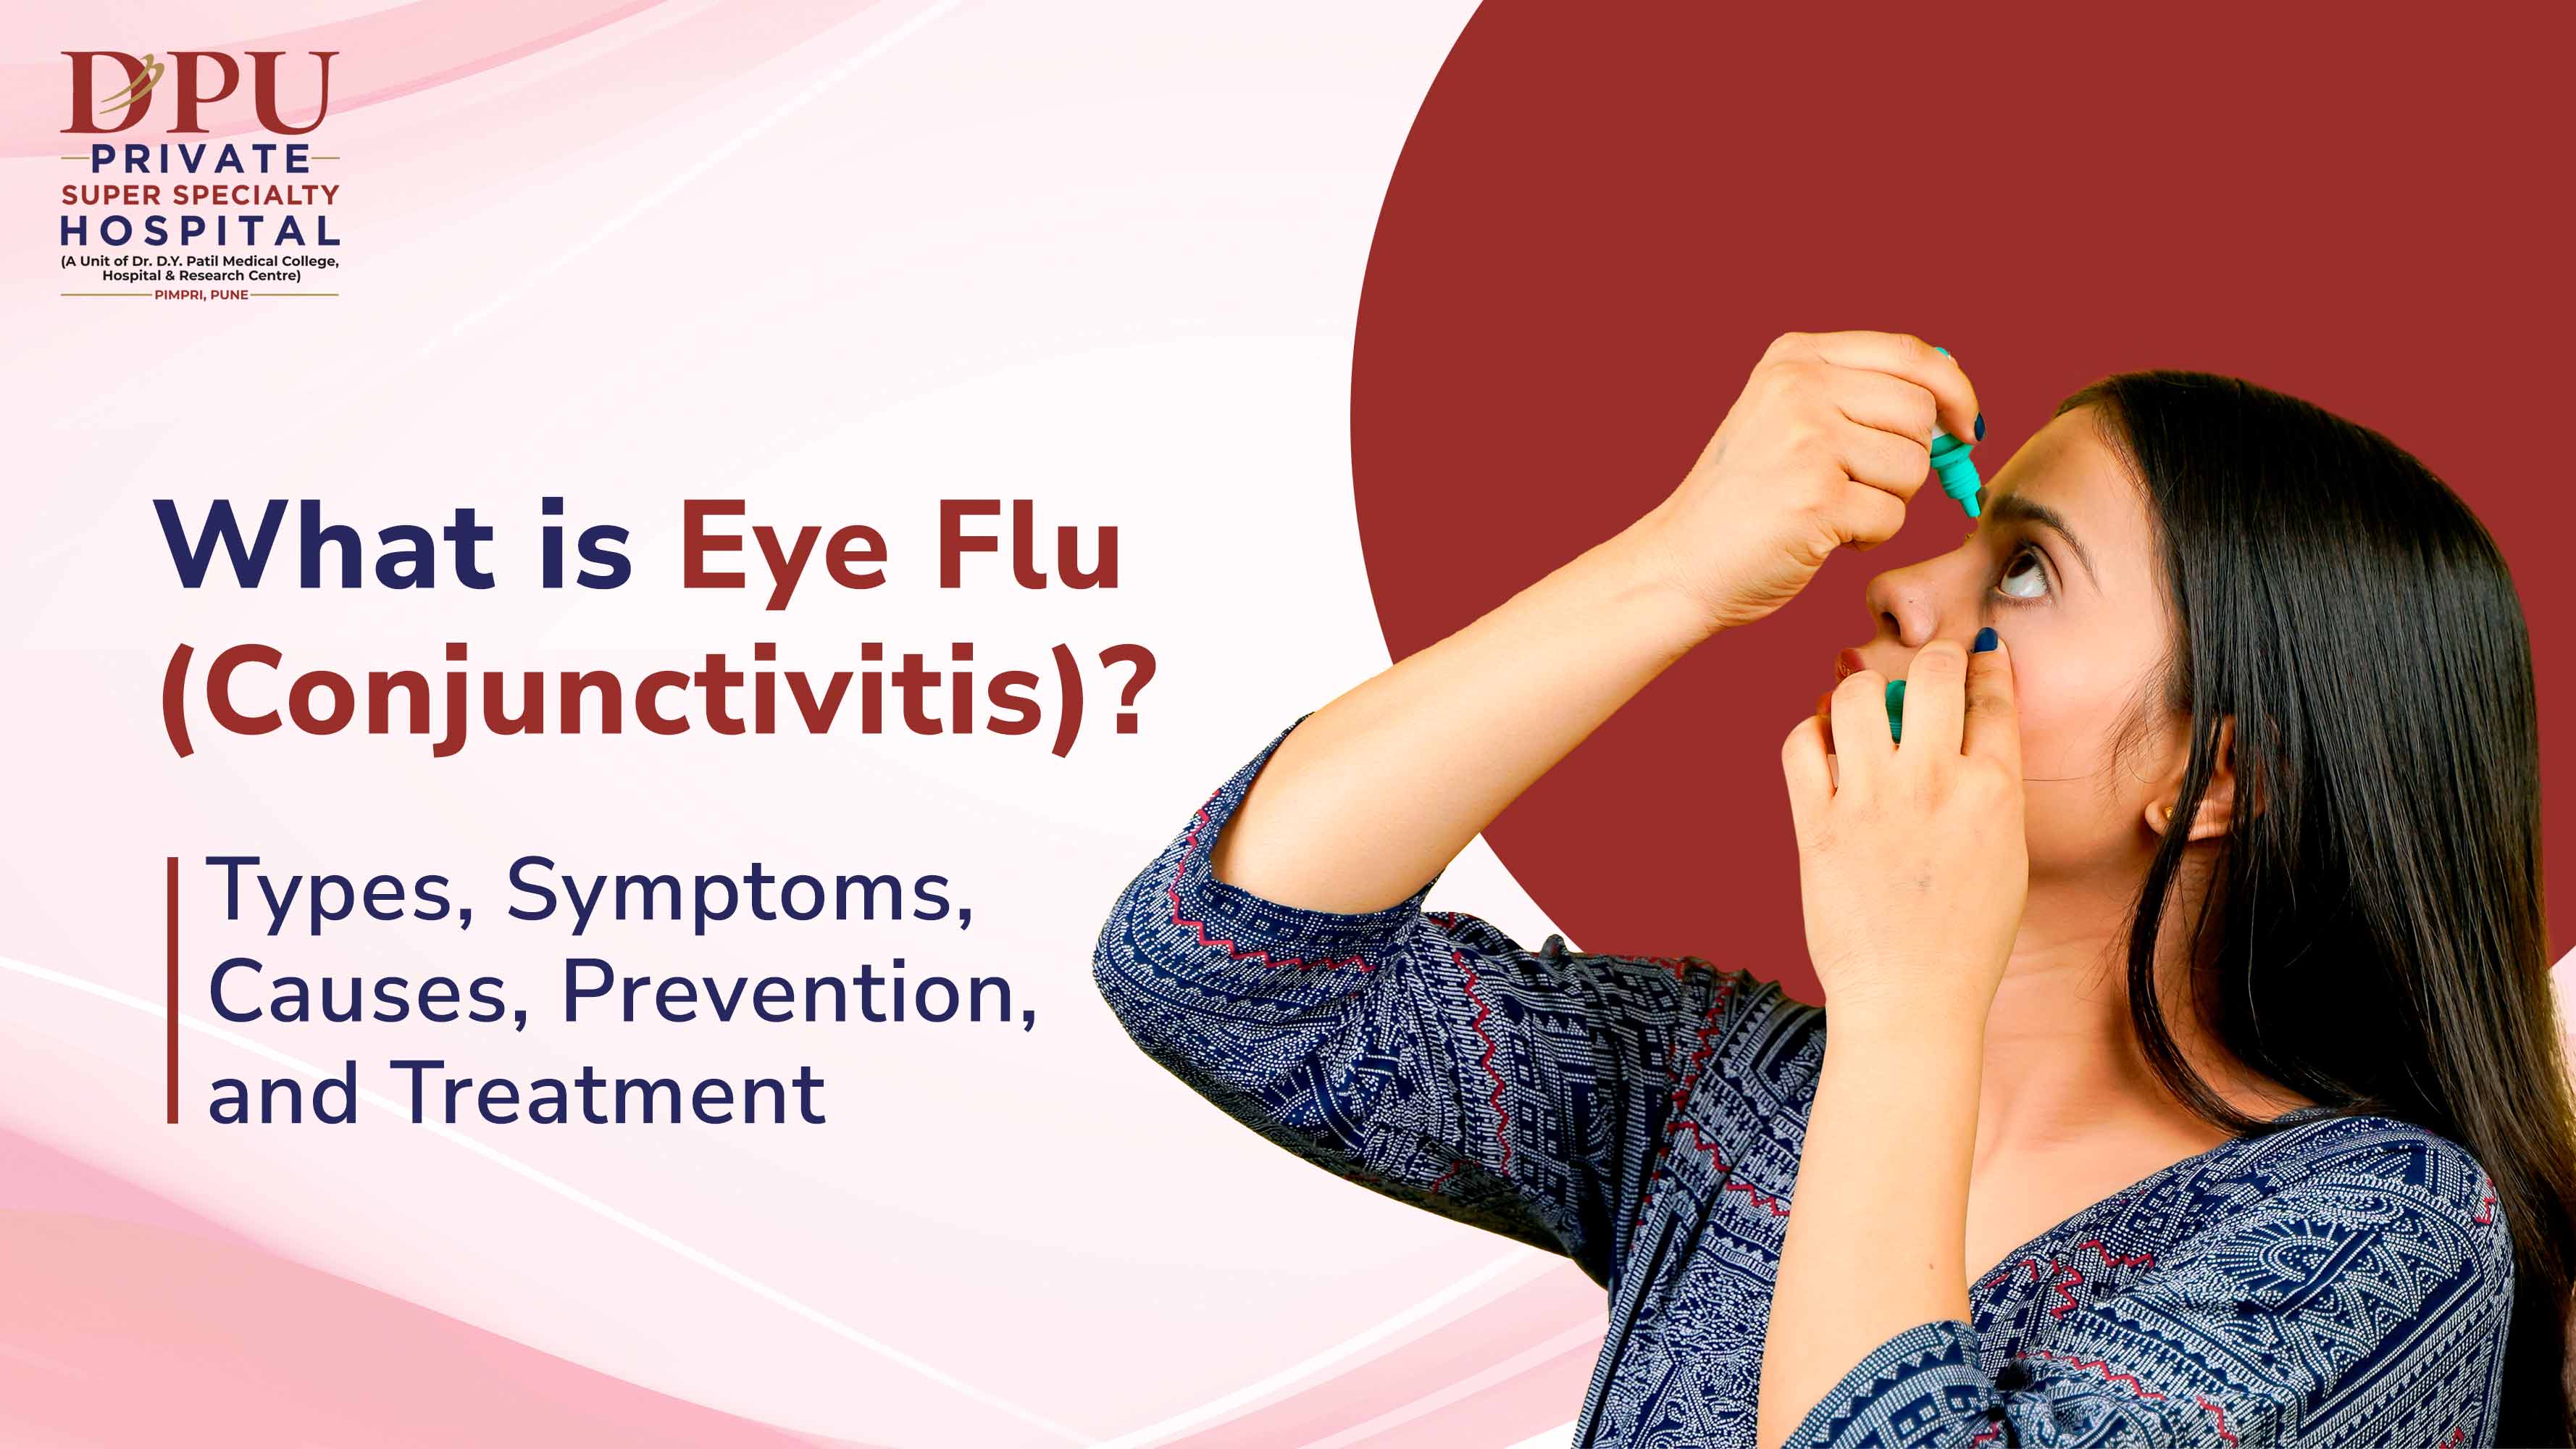 Eye Flu (Conjunctivitis) Guide